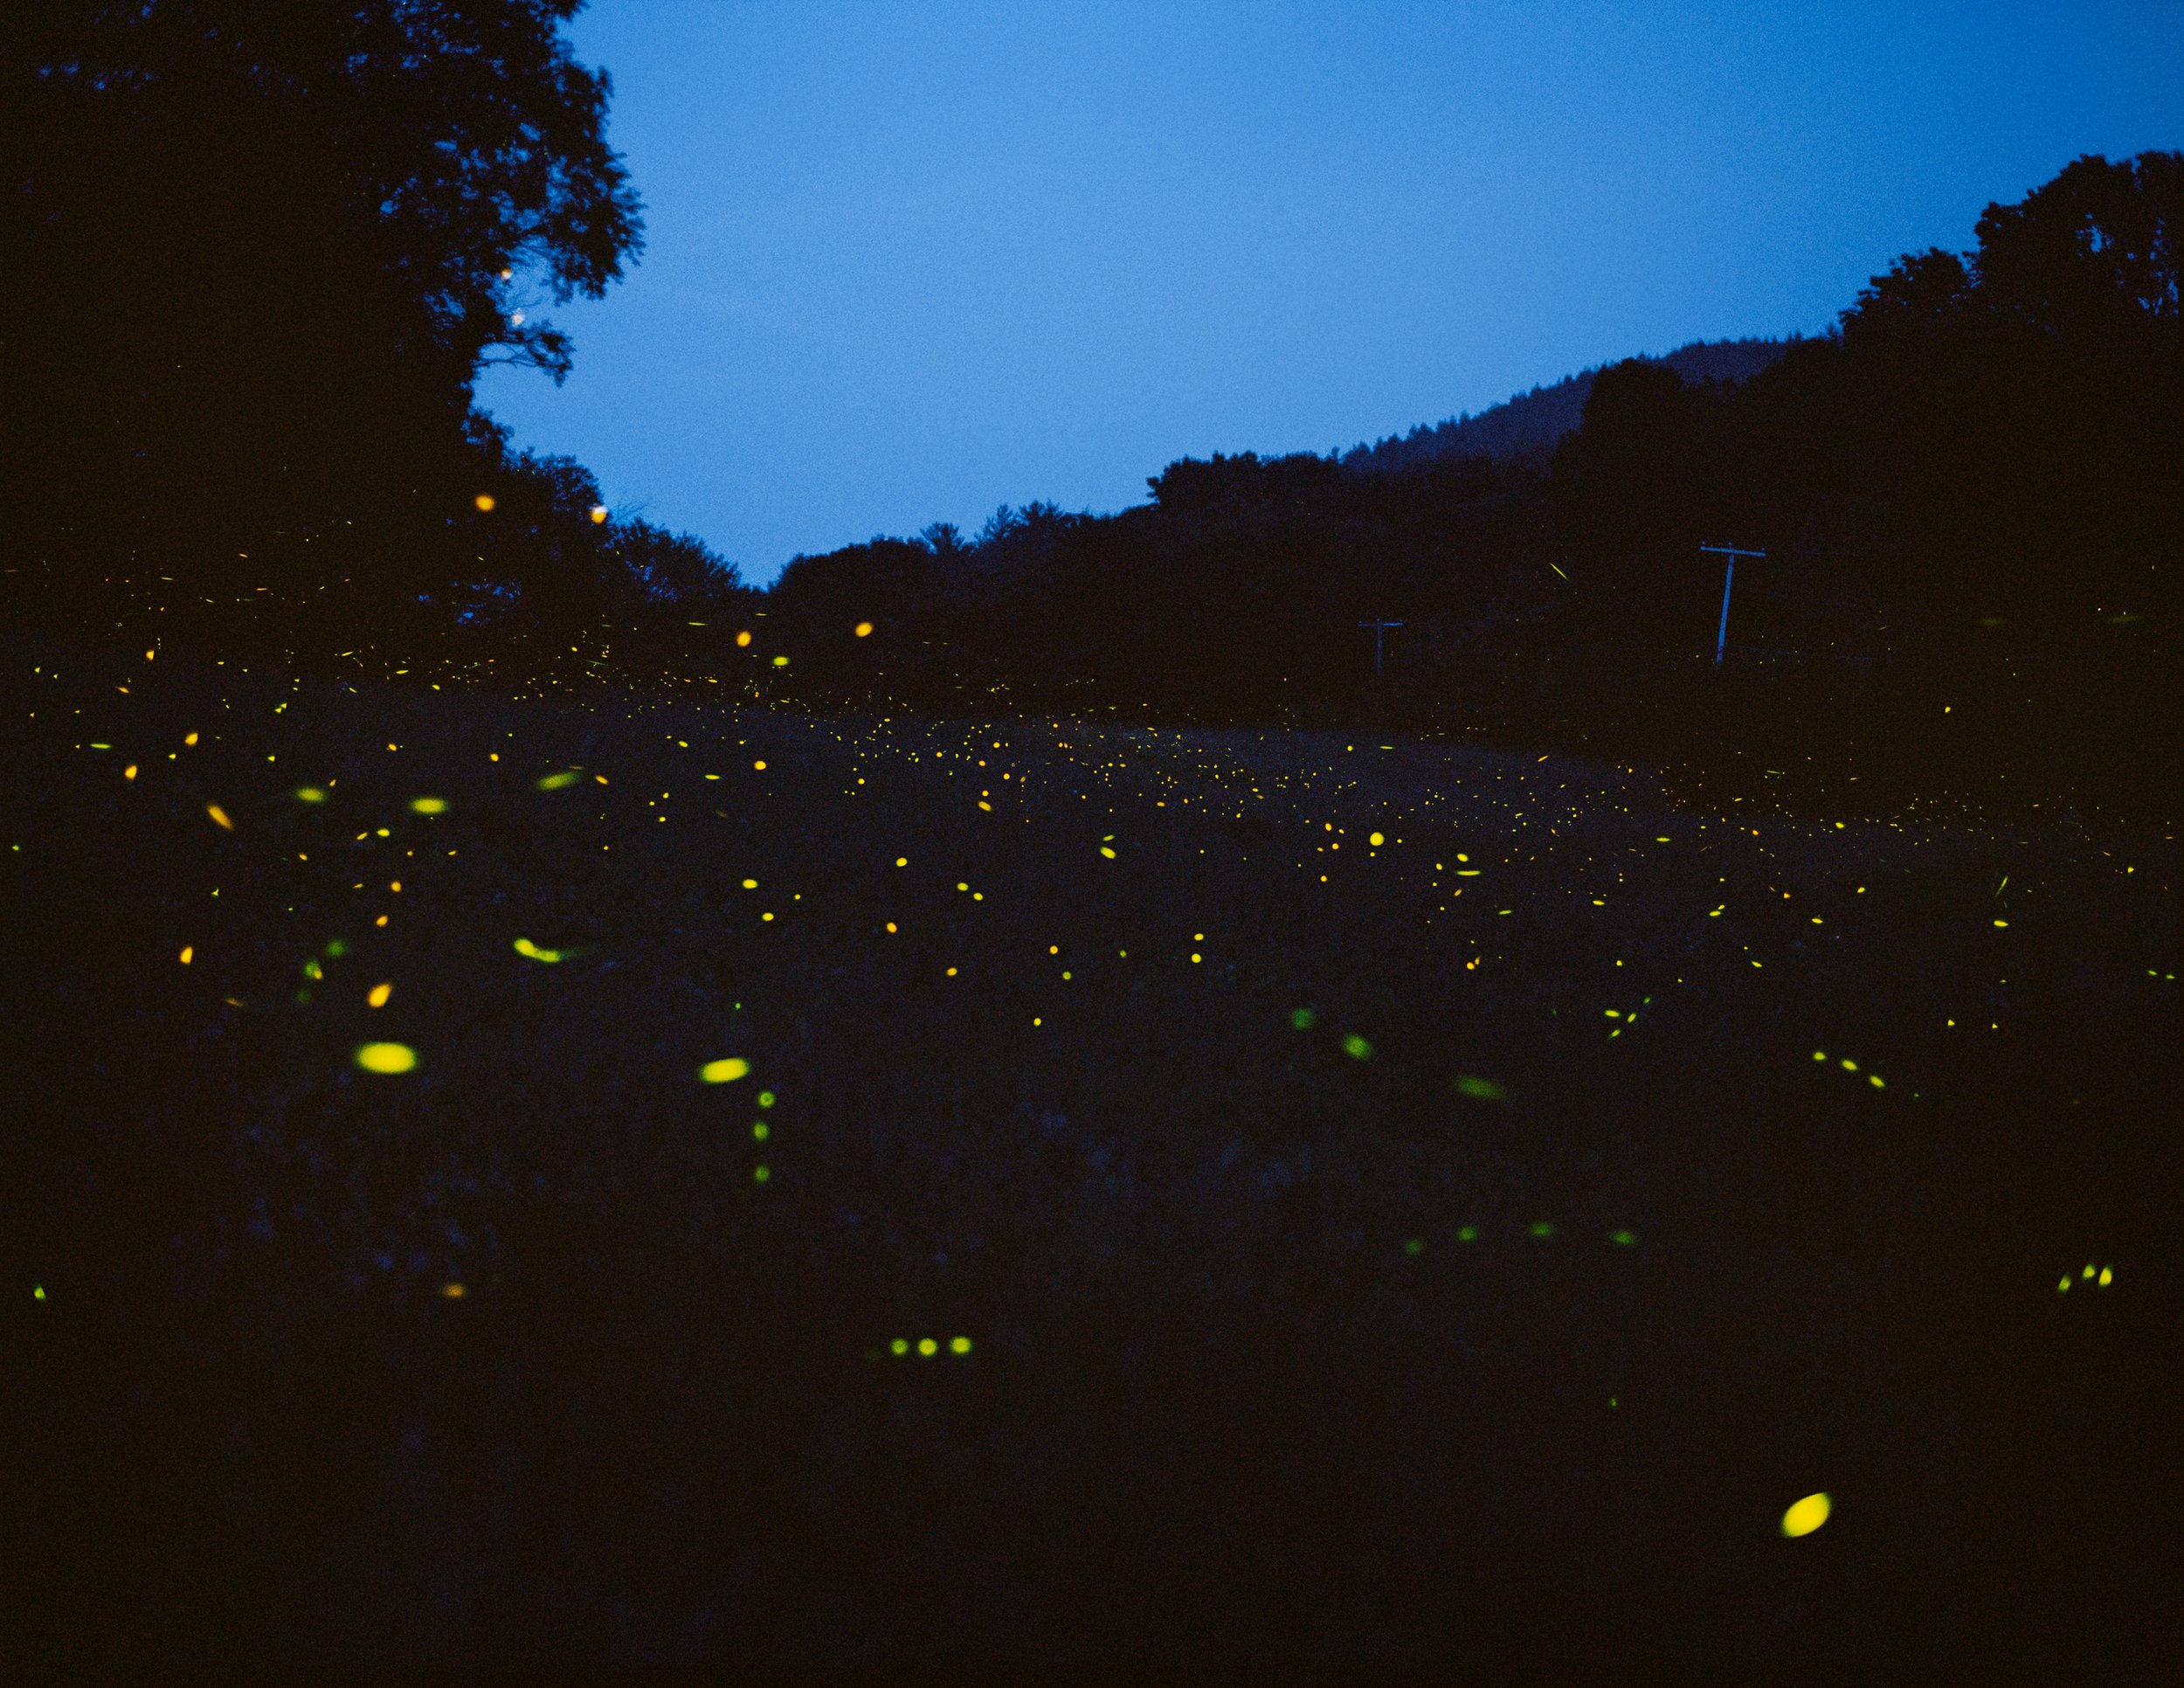   Fireflies, Pioneer Valley, Massachusetts, 2013  